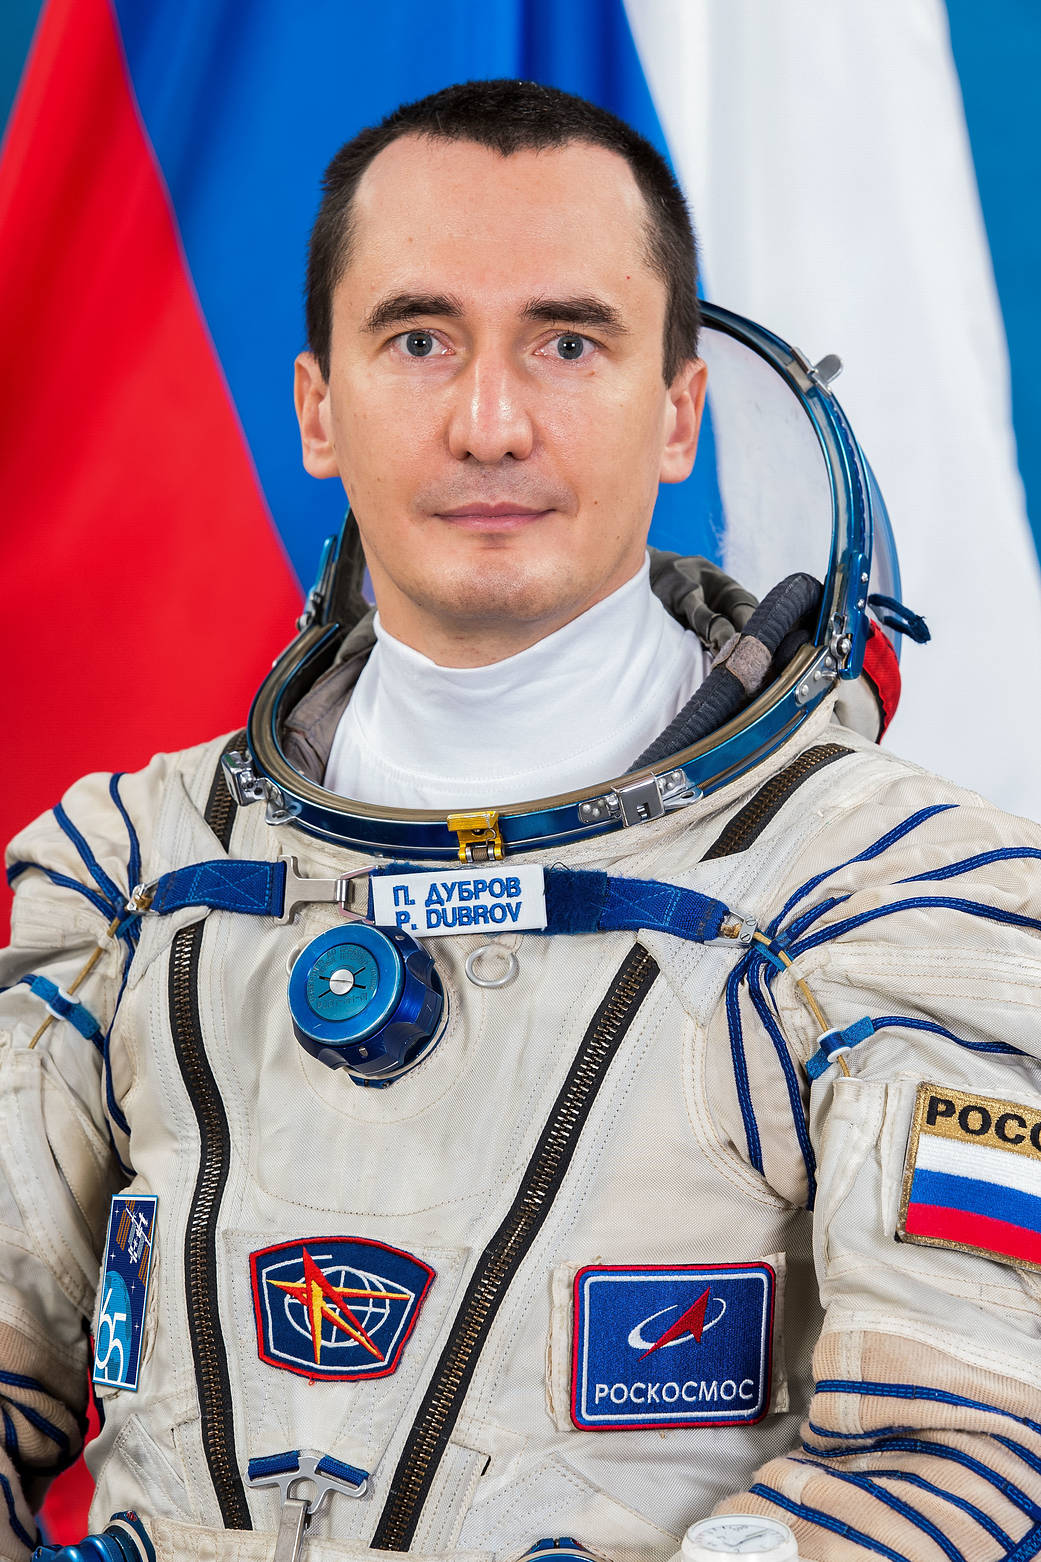 Expedition 65 prime crew member Pyotr Dubrov